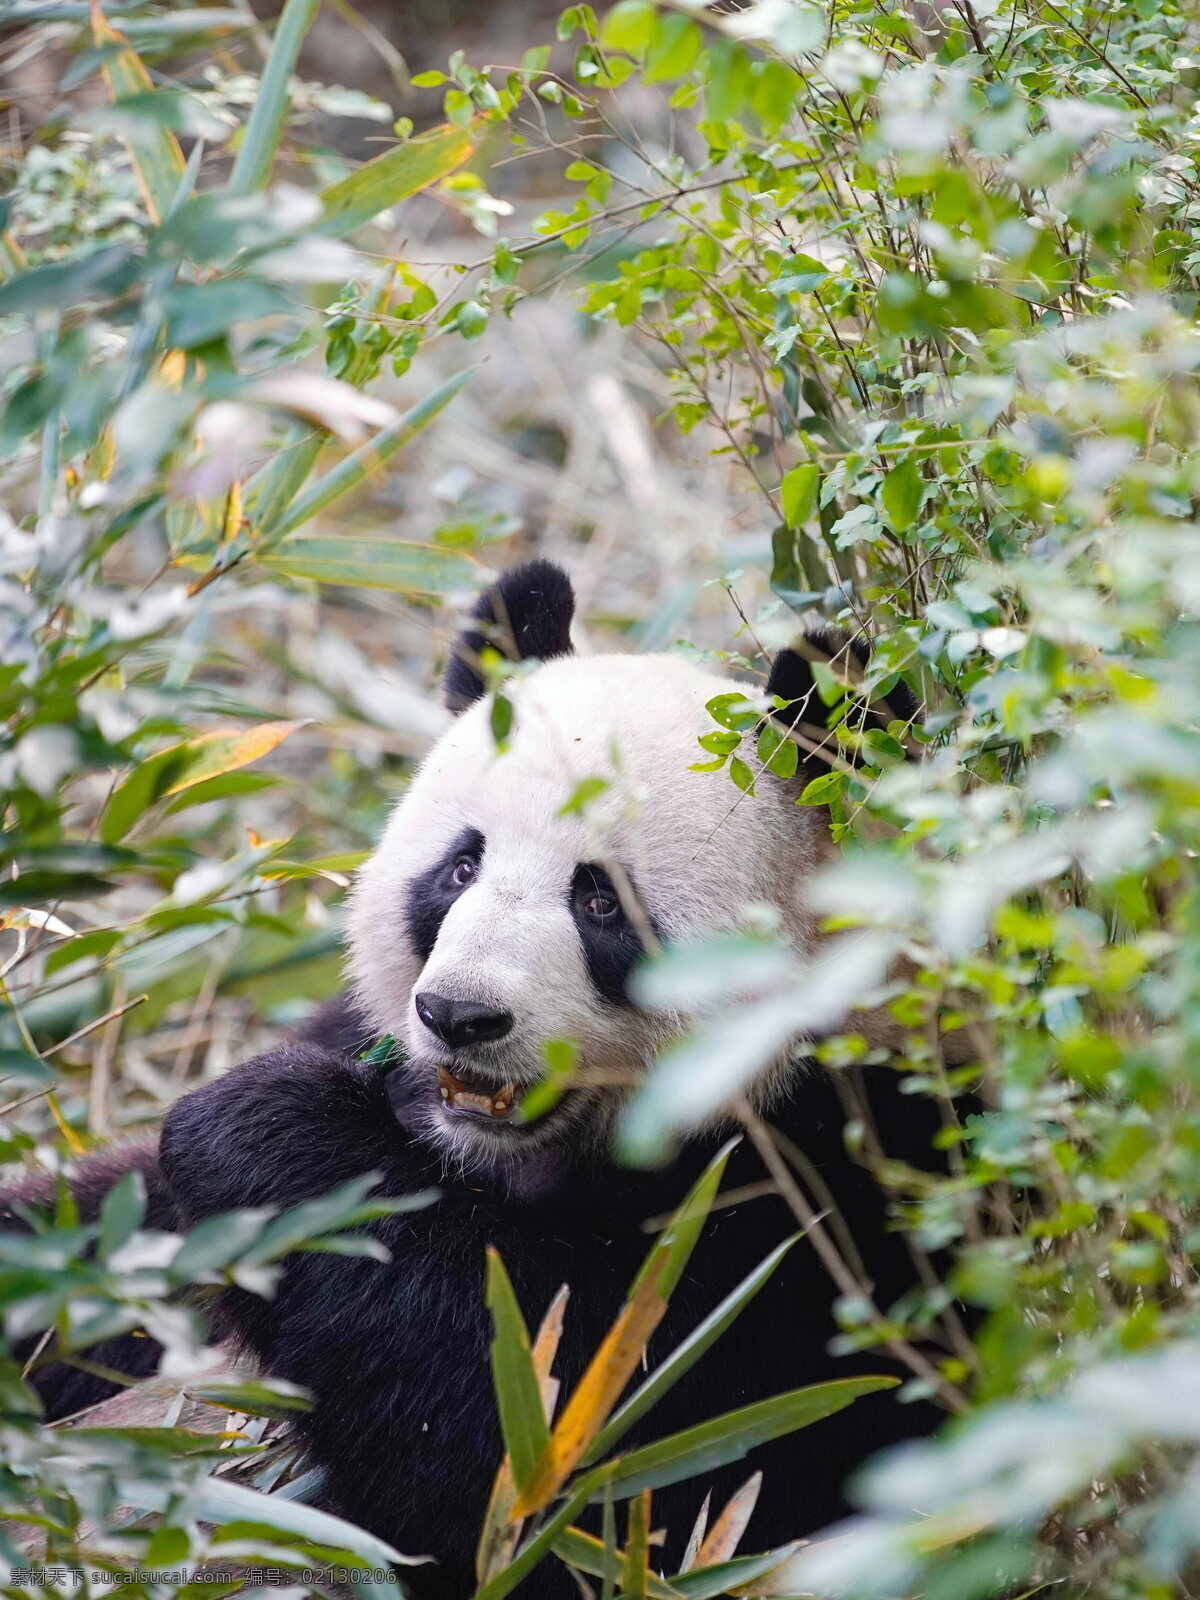 可爱大熊猫 可爱熊猫 大熊猫 熊猫 竹熊 银狗 洞尕 杜洞尕 猛豹 食铁兽 国宝熊猫 中国熊猫 哺乳动物 中国国宝 动物 生物世界 野生动物